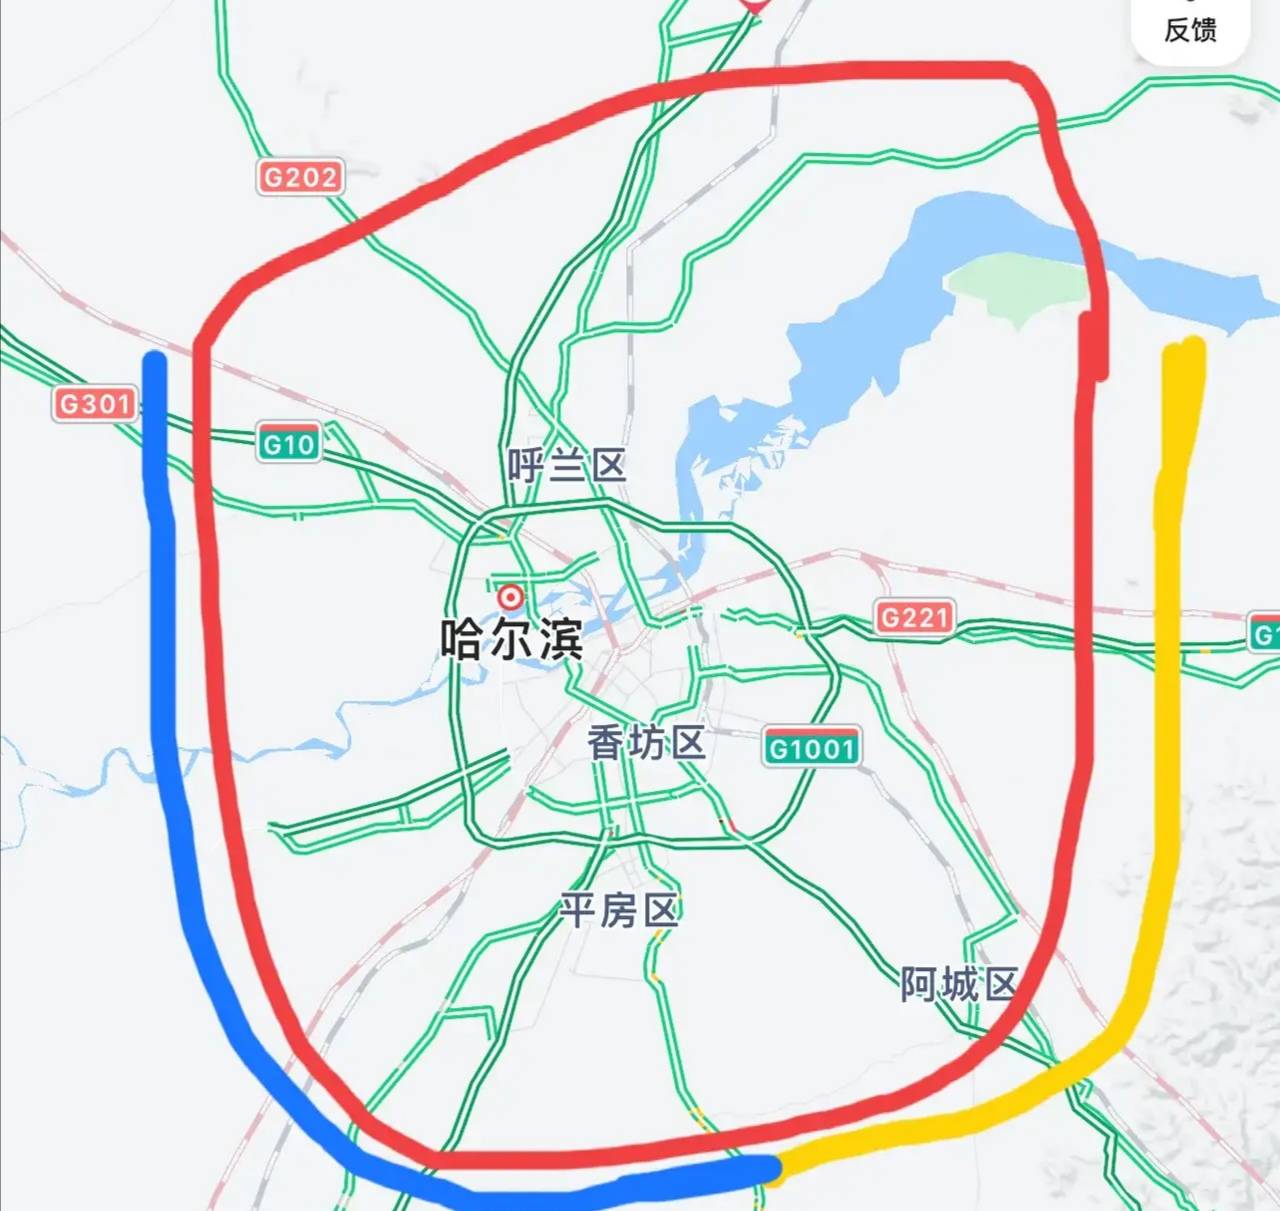 哈尔滨五环已经来了又名都市圈环线谁说哈尔滨没发展聊一聊